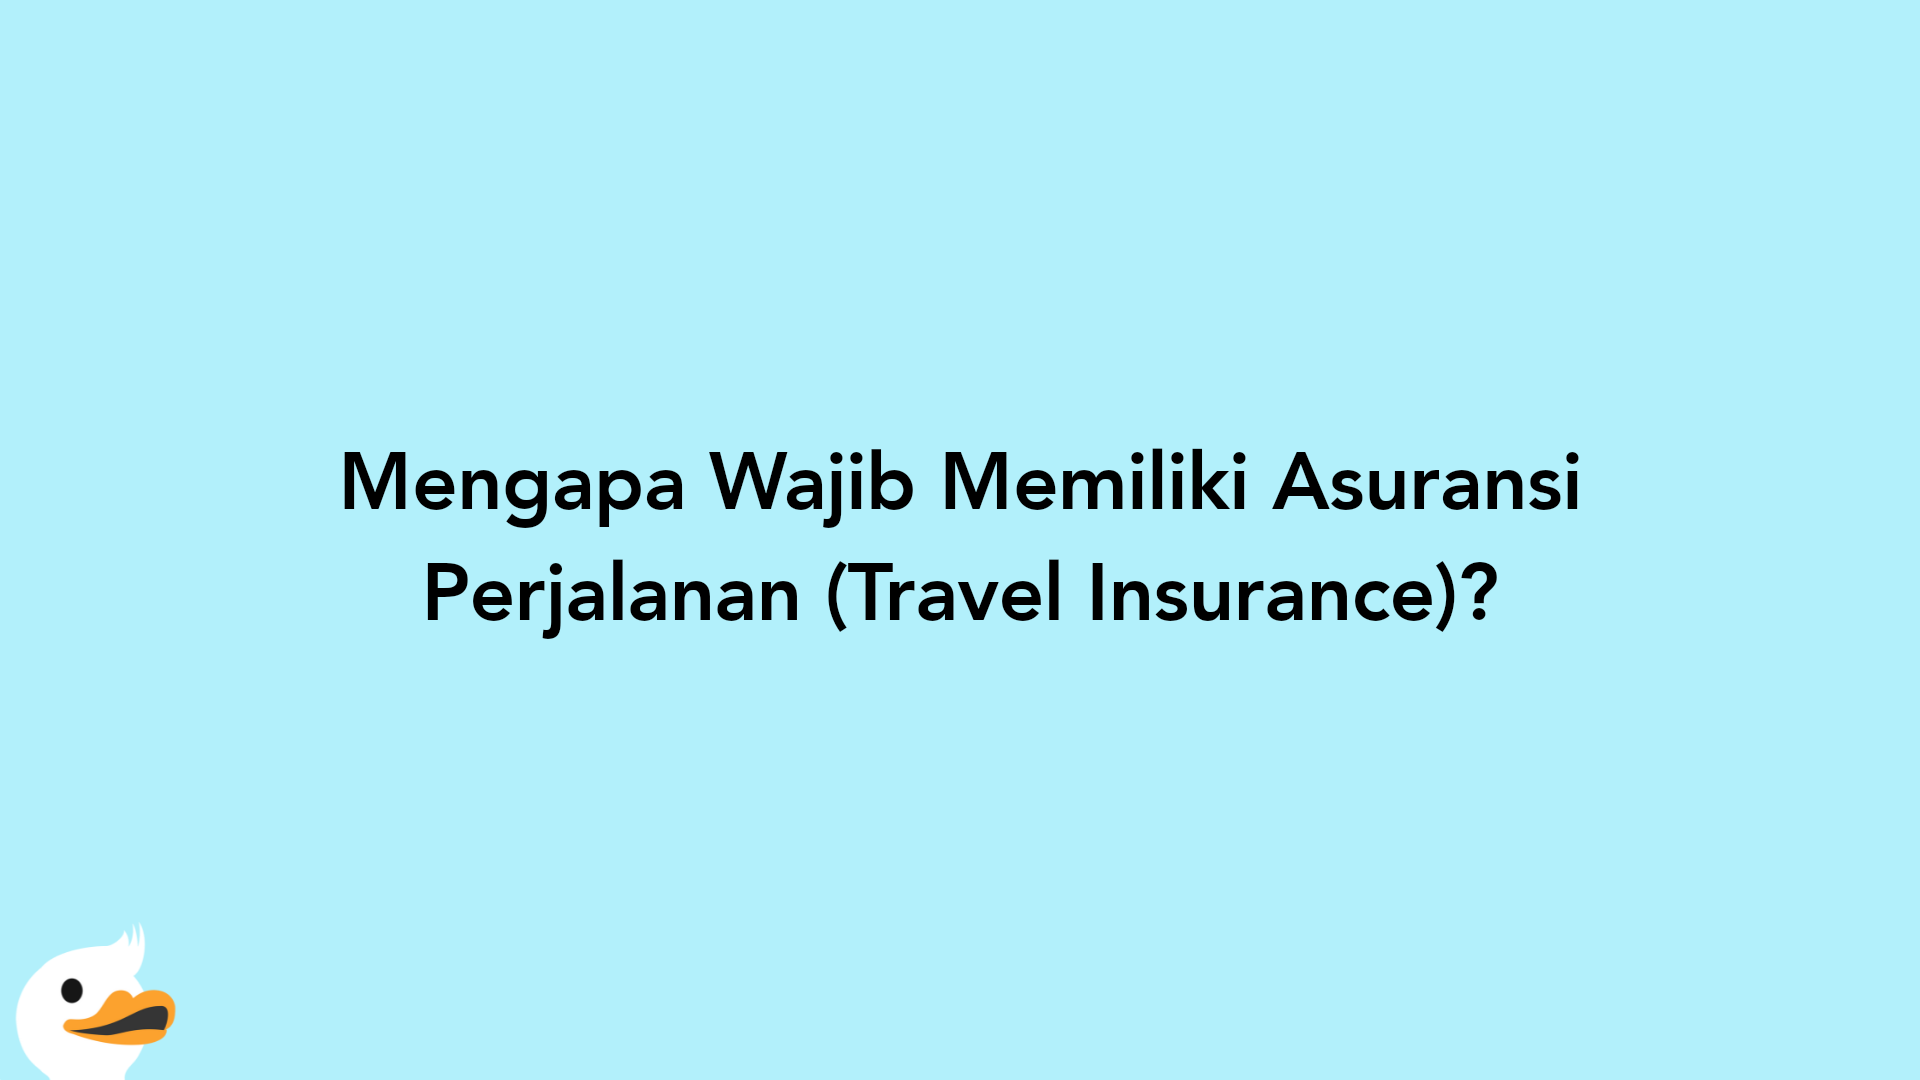 Mengapa Wajib Memiliki Asuransi Perjalanan (Travel Insurance)?